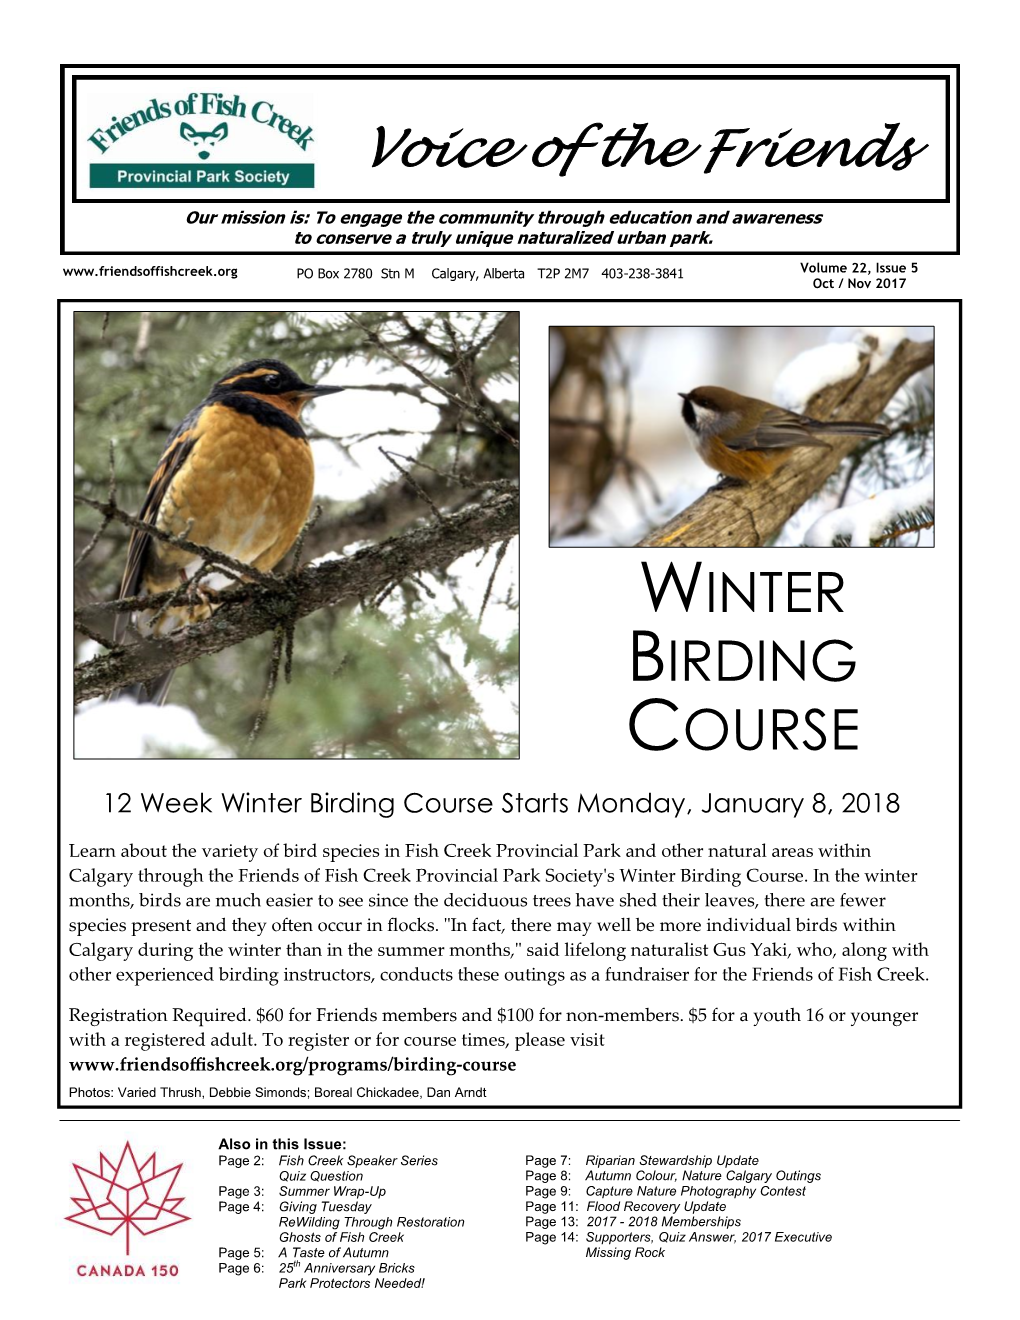 Winter Birding Course